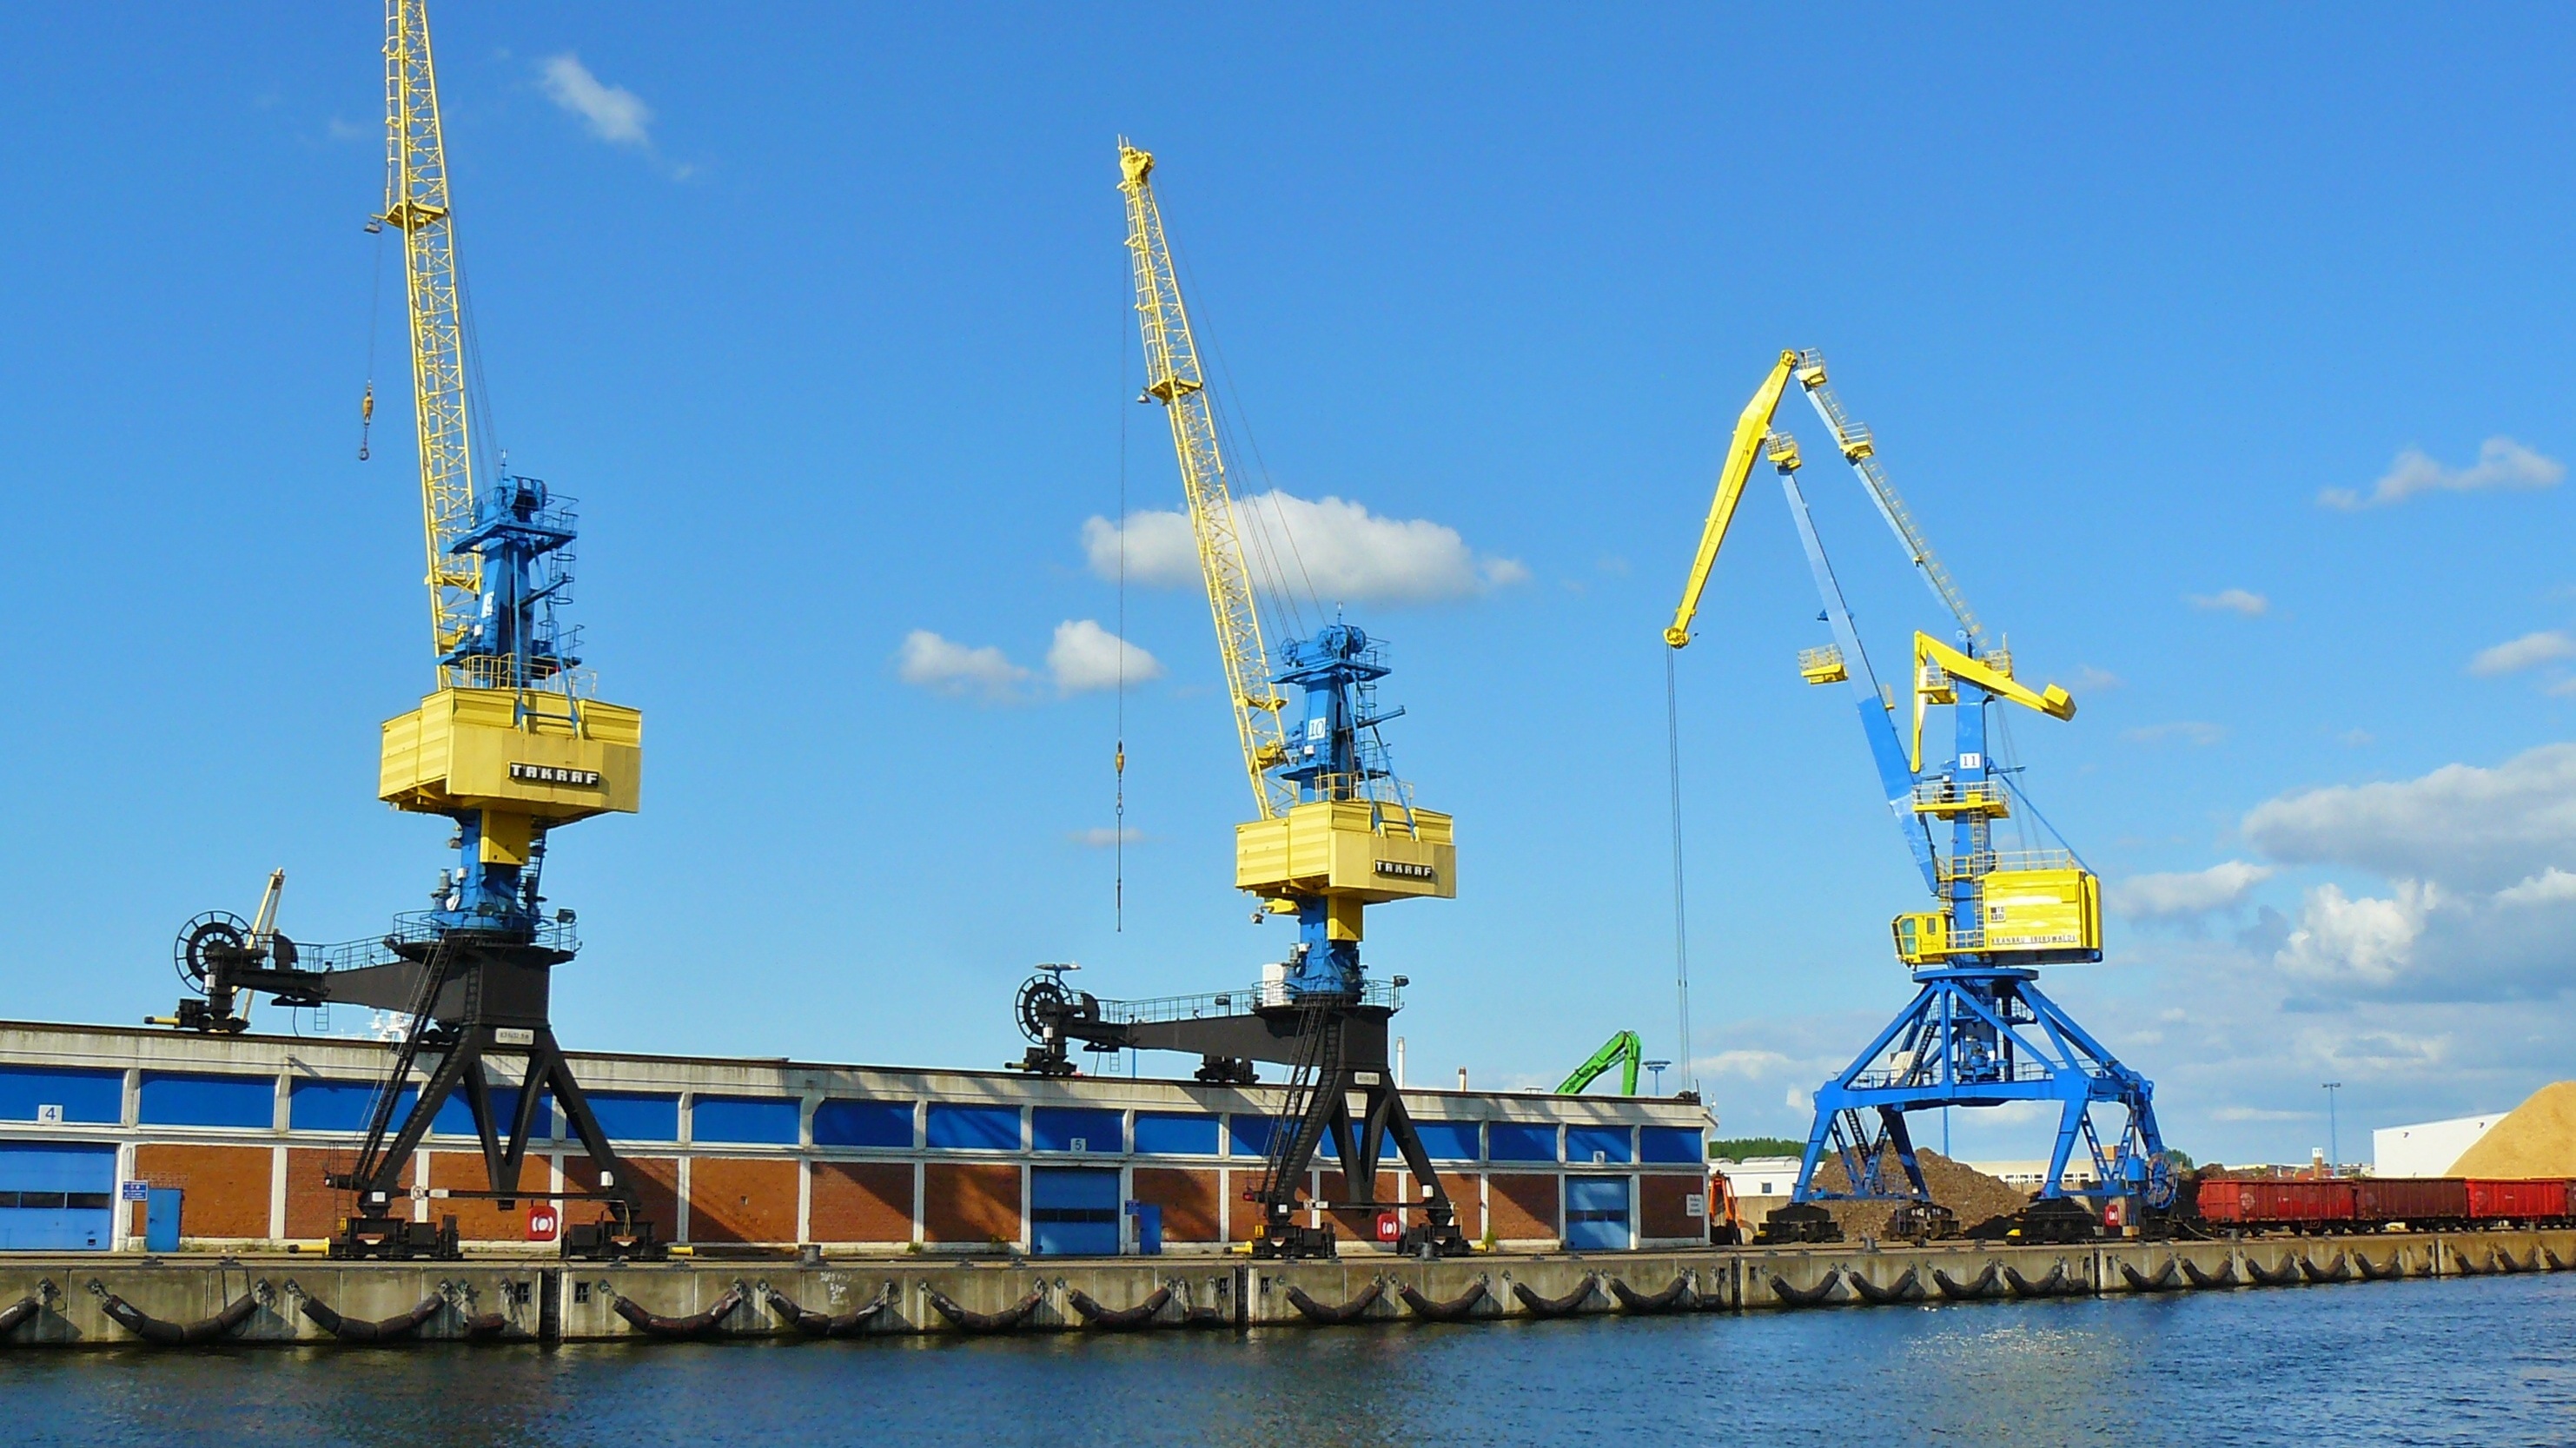 Дело поступило в арбитражный суд на рассмотрение в марте текущего года — ростовская компания потребовала взыскать с порта Мариуполя 5,5 миллиона рублей.